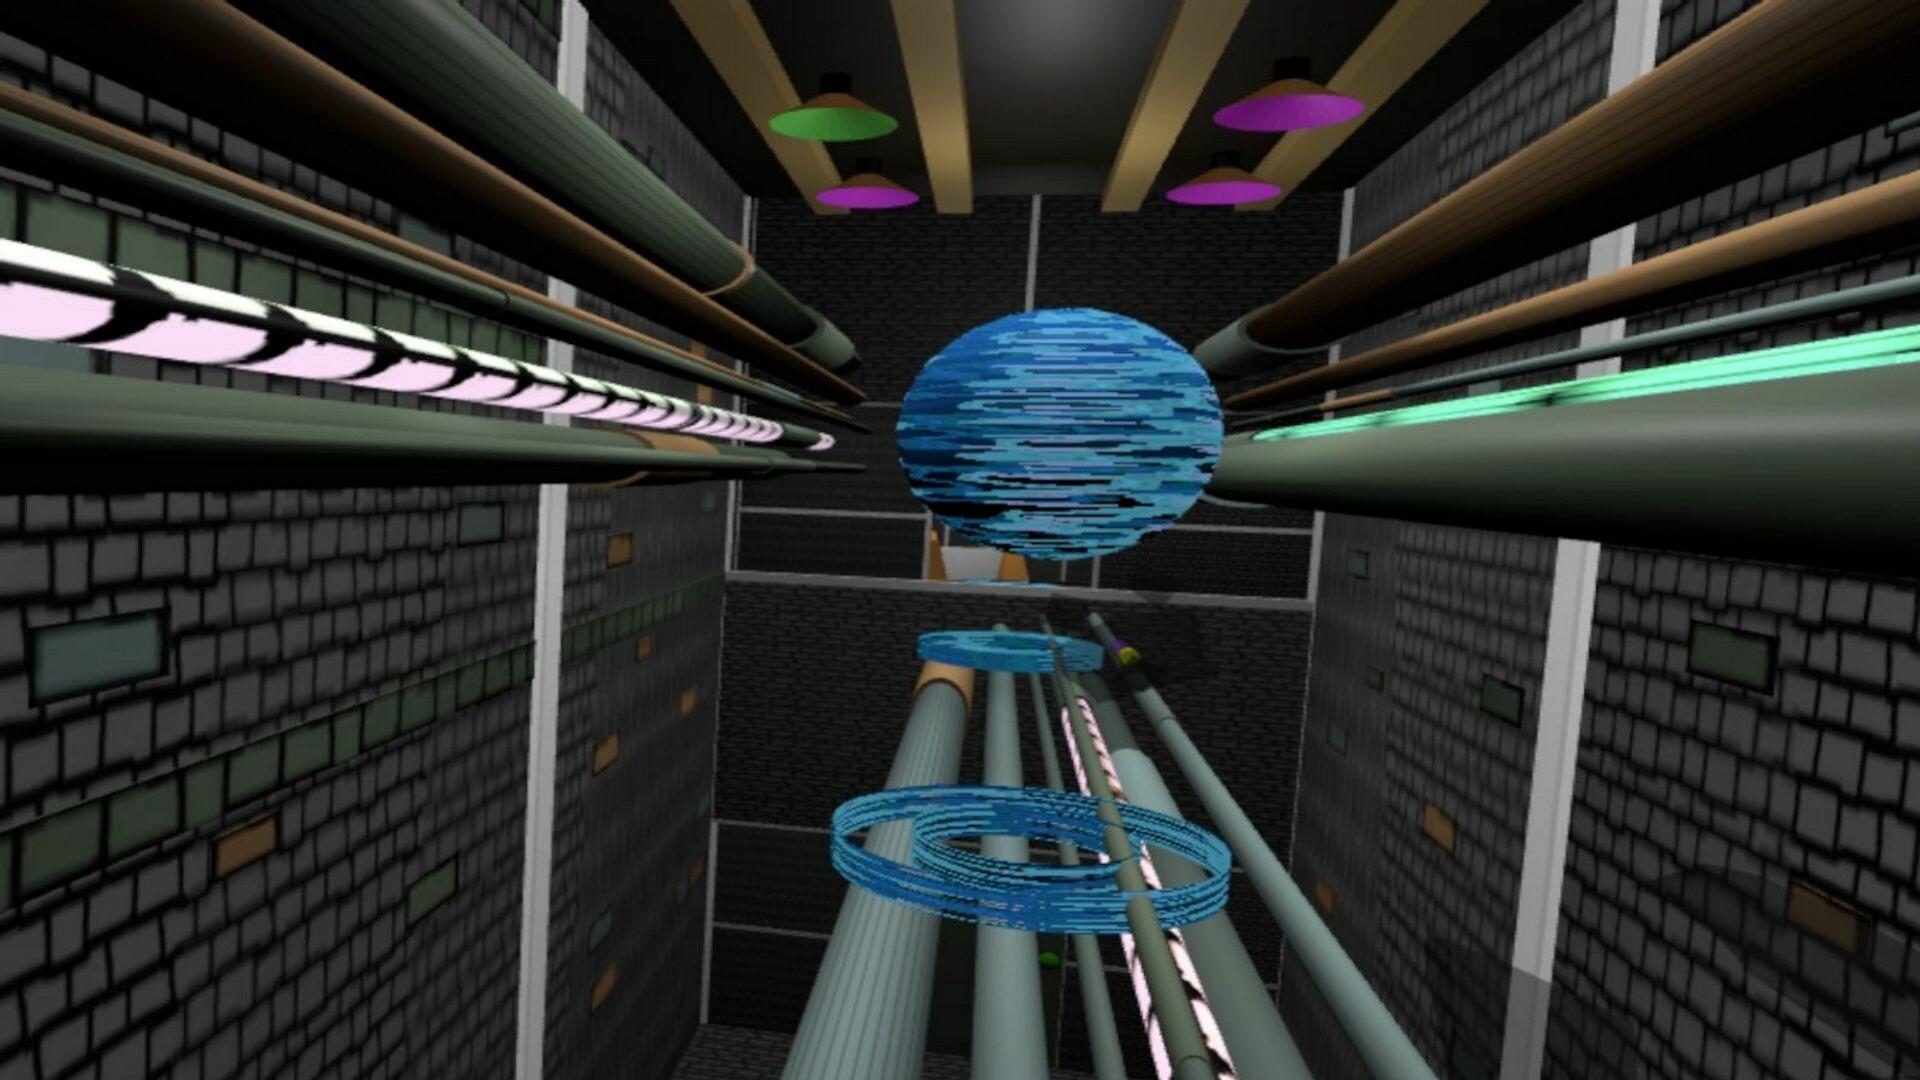 Screenshot 1 of Vortice fantasma VR 